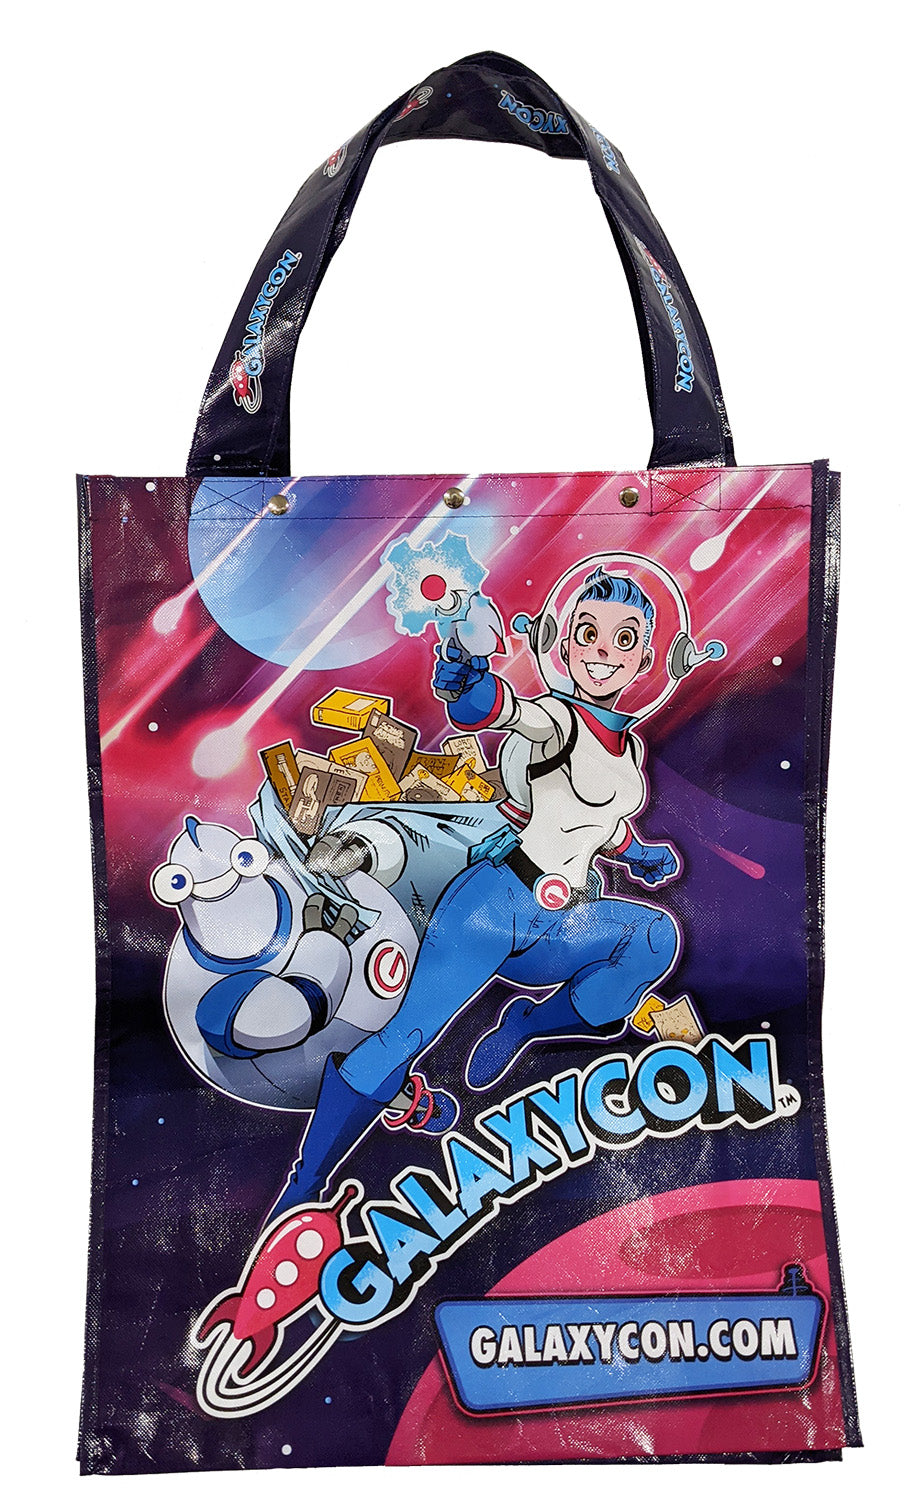 Galaxycon Expo Bag